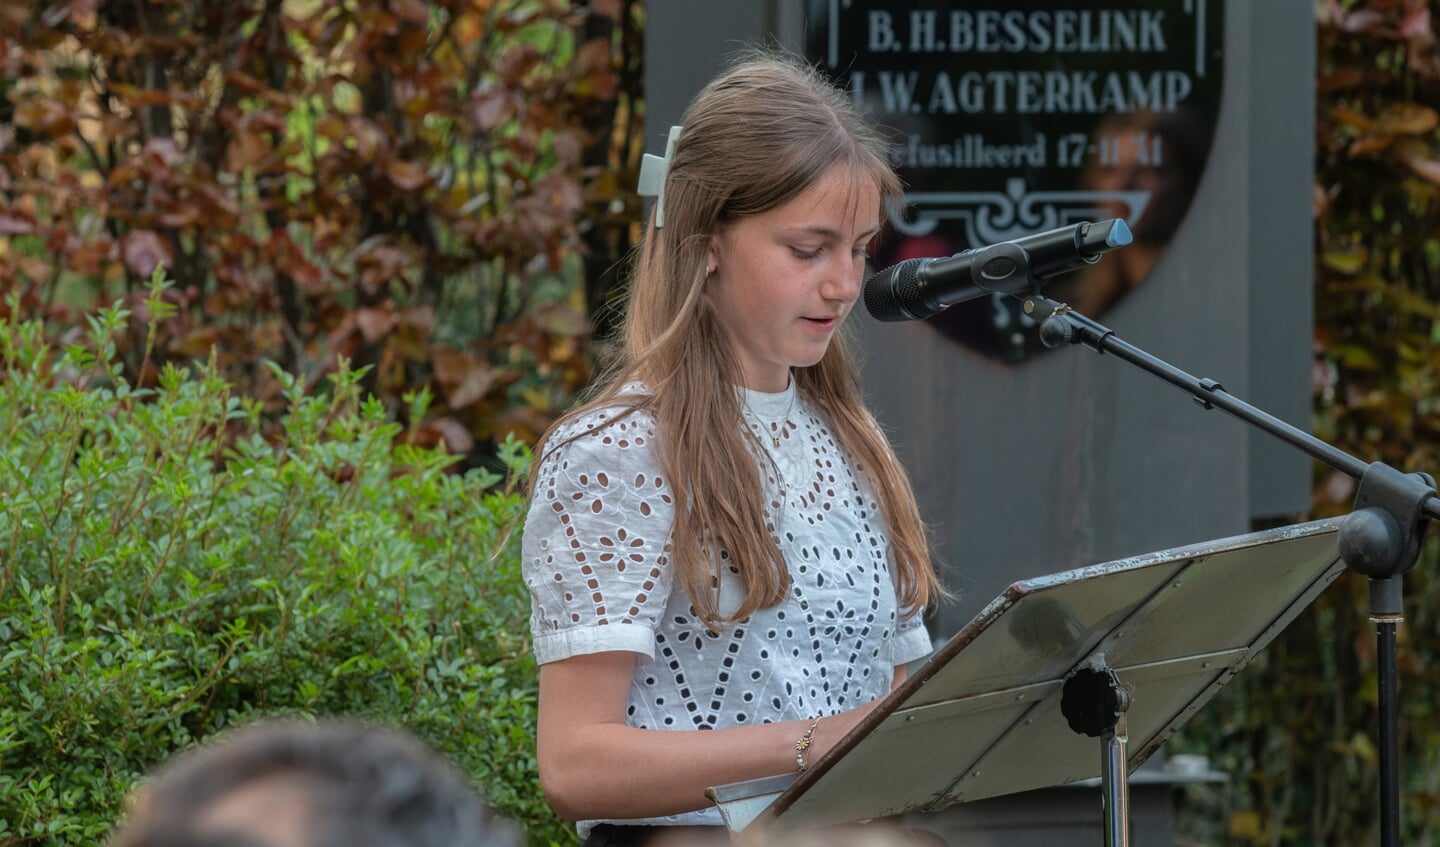 Amber Besselink draagt haar gedicht voor tijdens de herdenking 4 mei in Steenderen. Foto: Liesbeth Spaansen